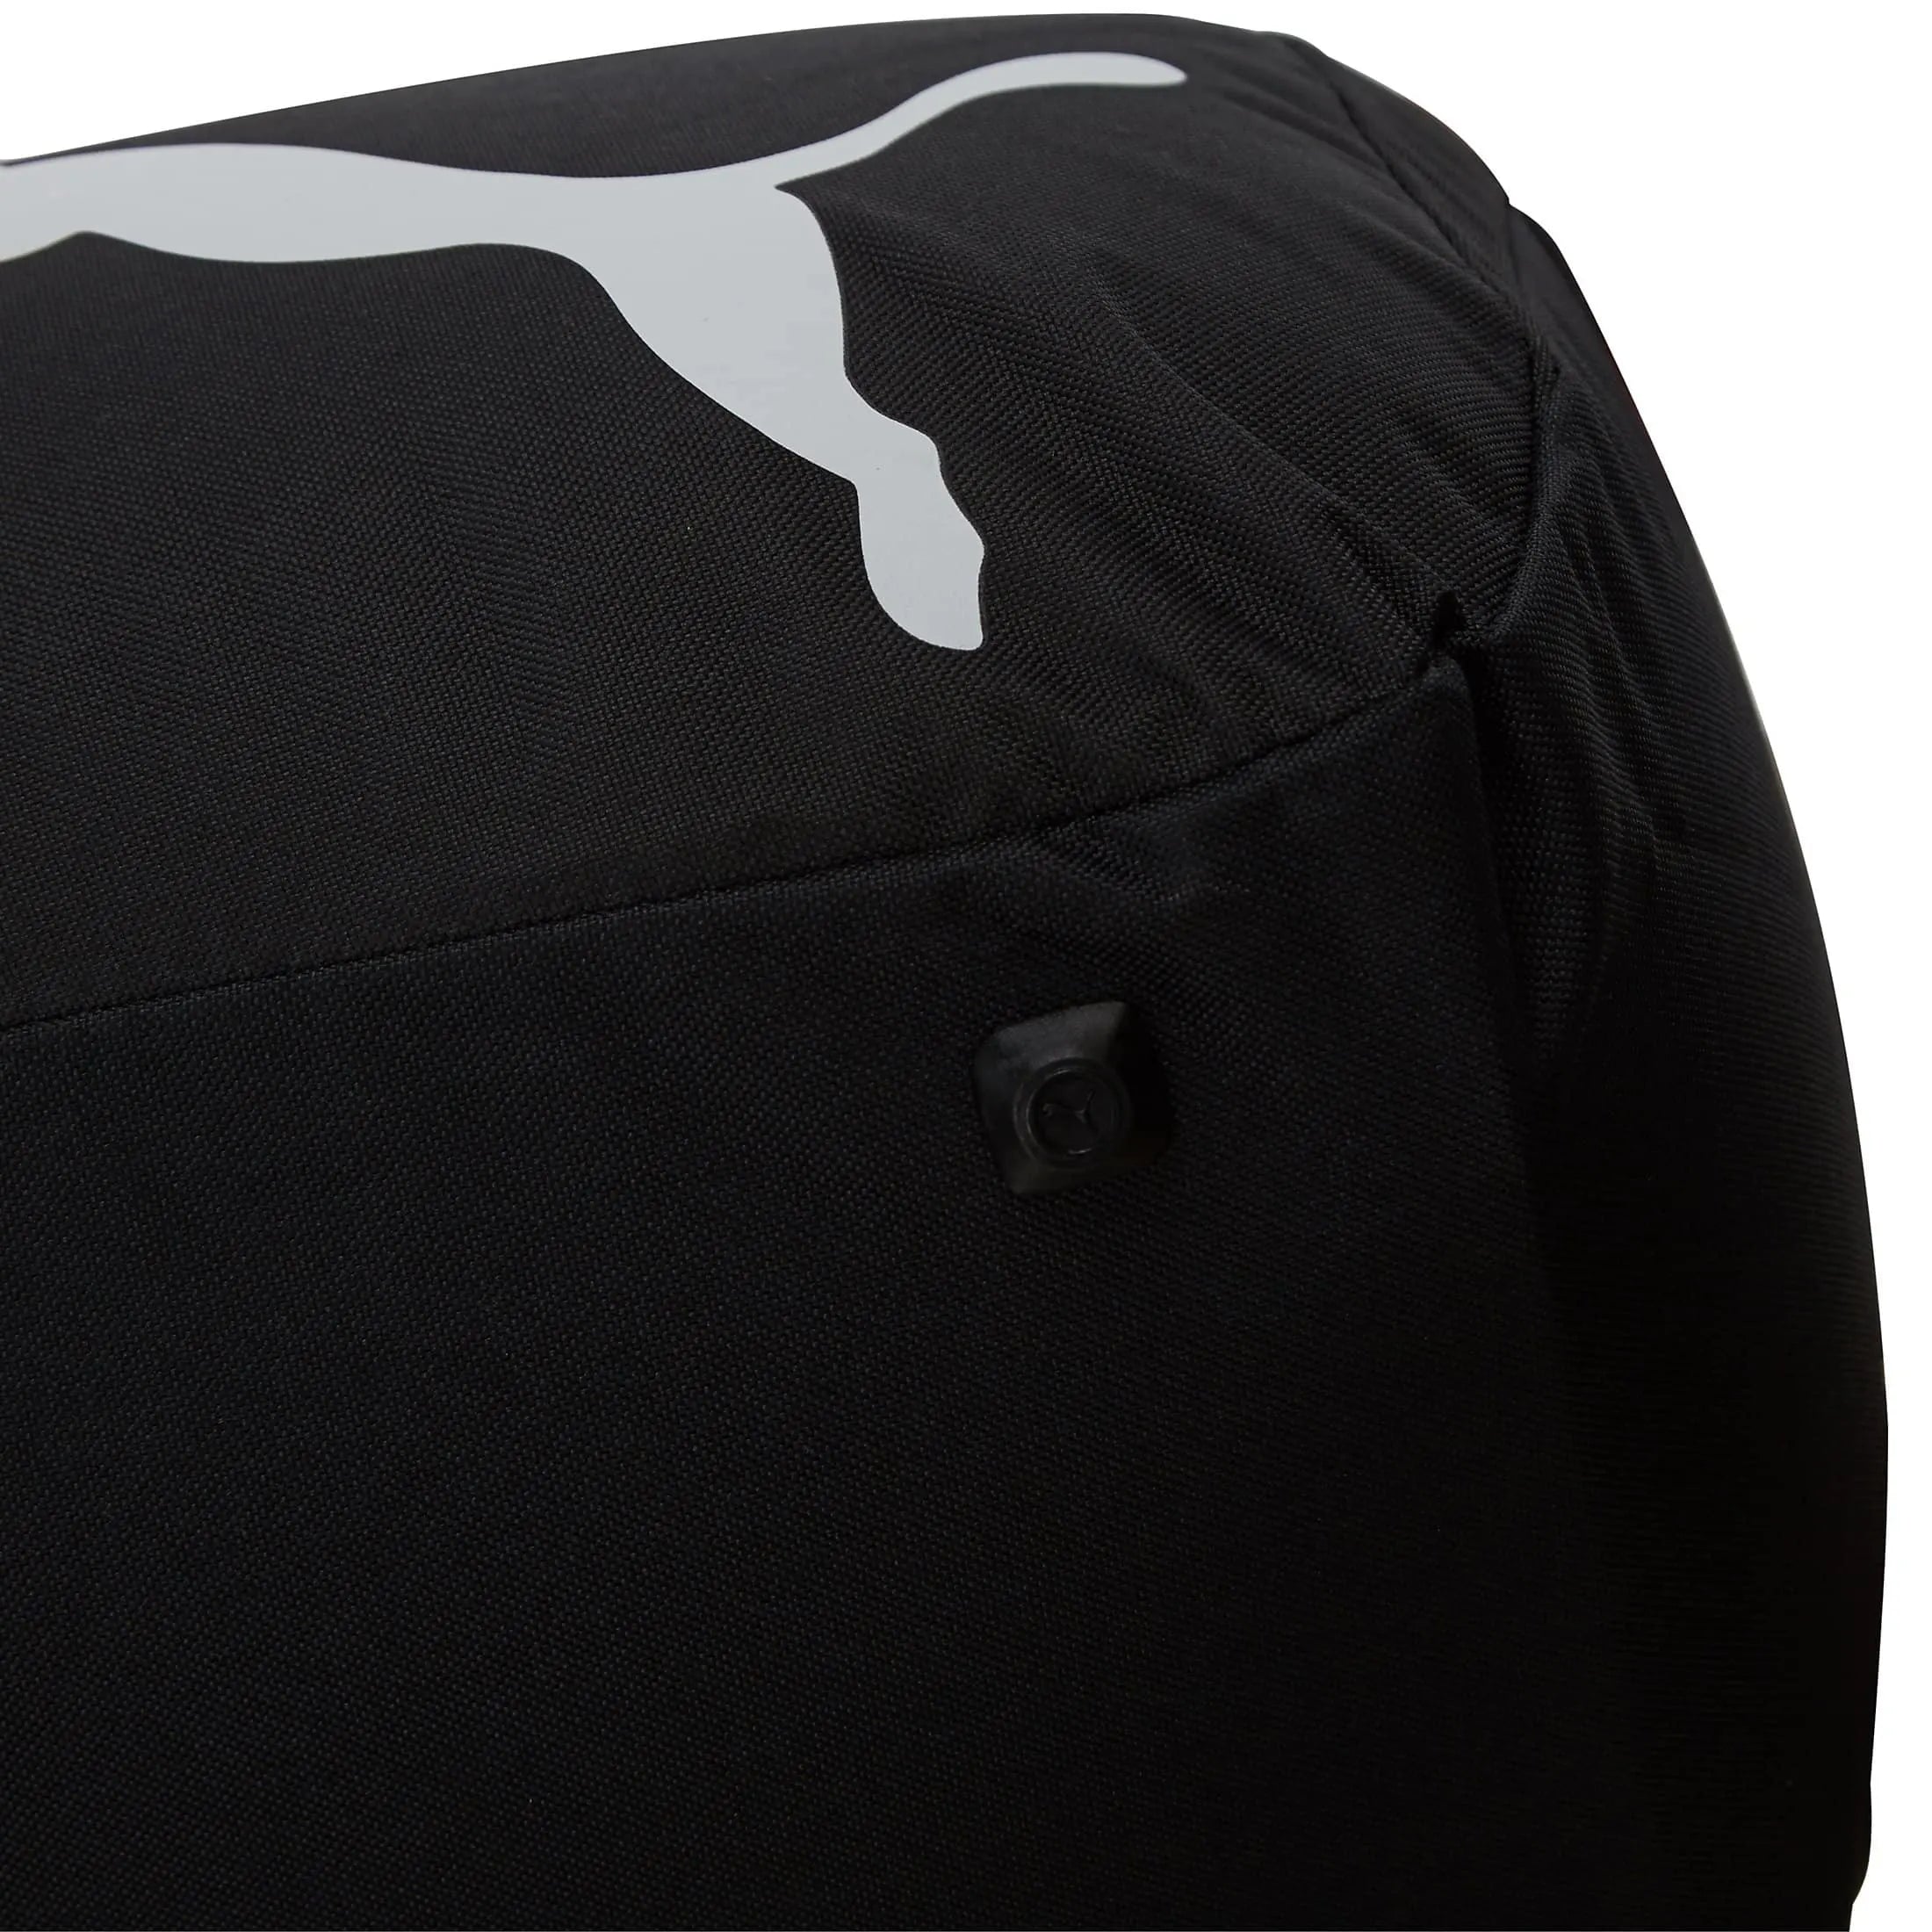 Puma Pro Training Small Bag sports bag 48 cm - black-puma royal-white